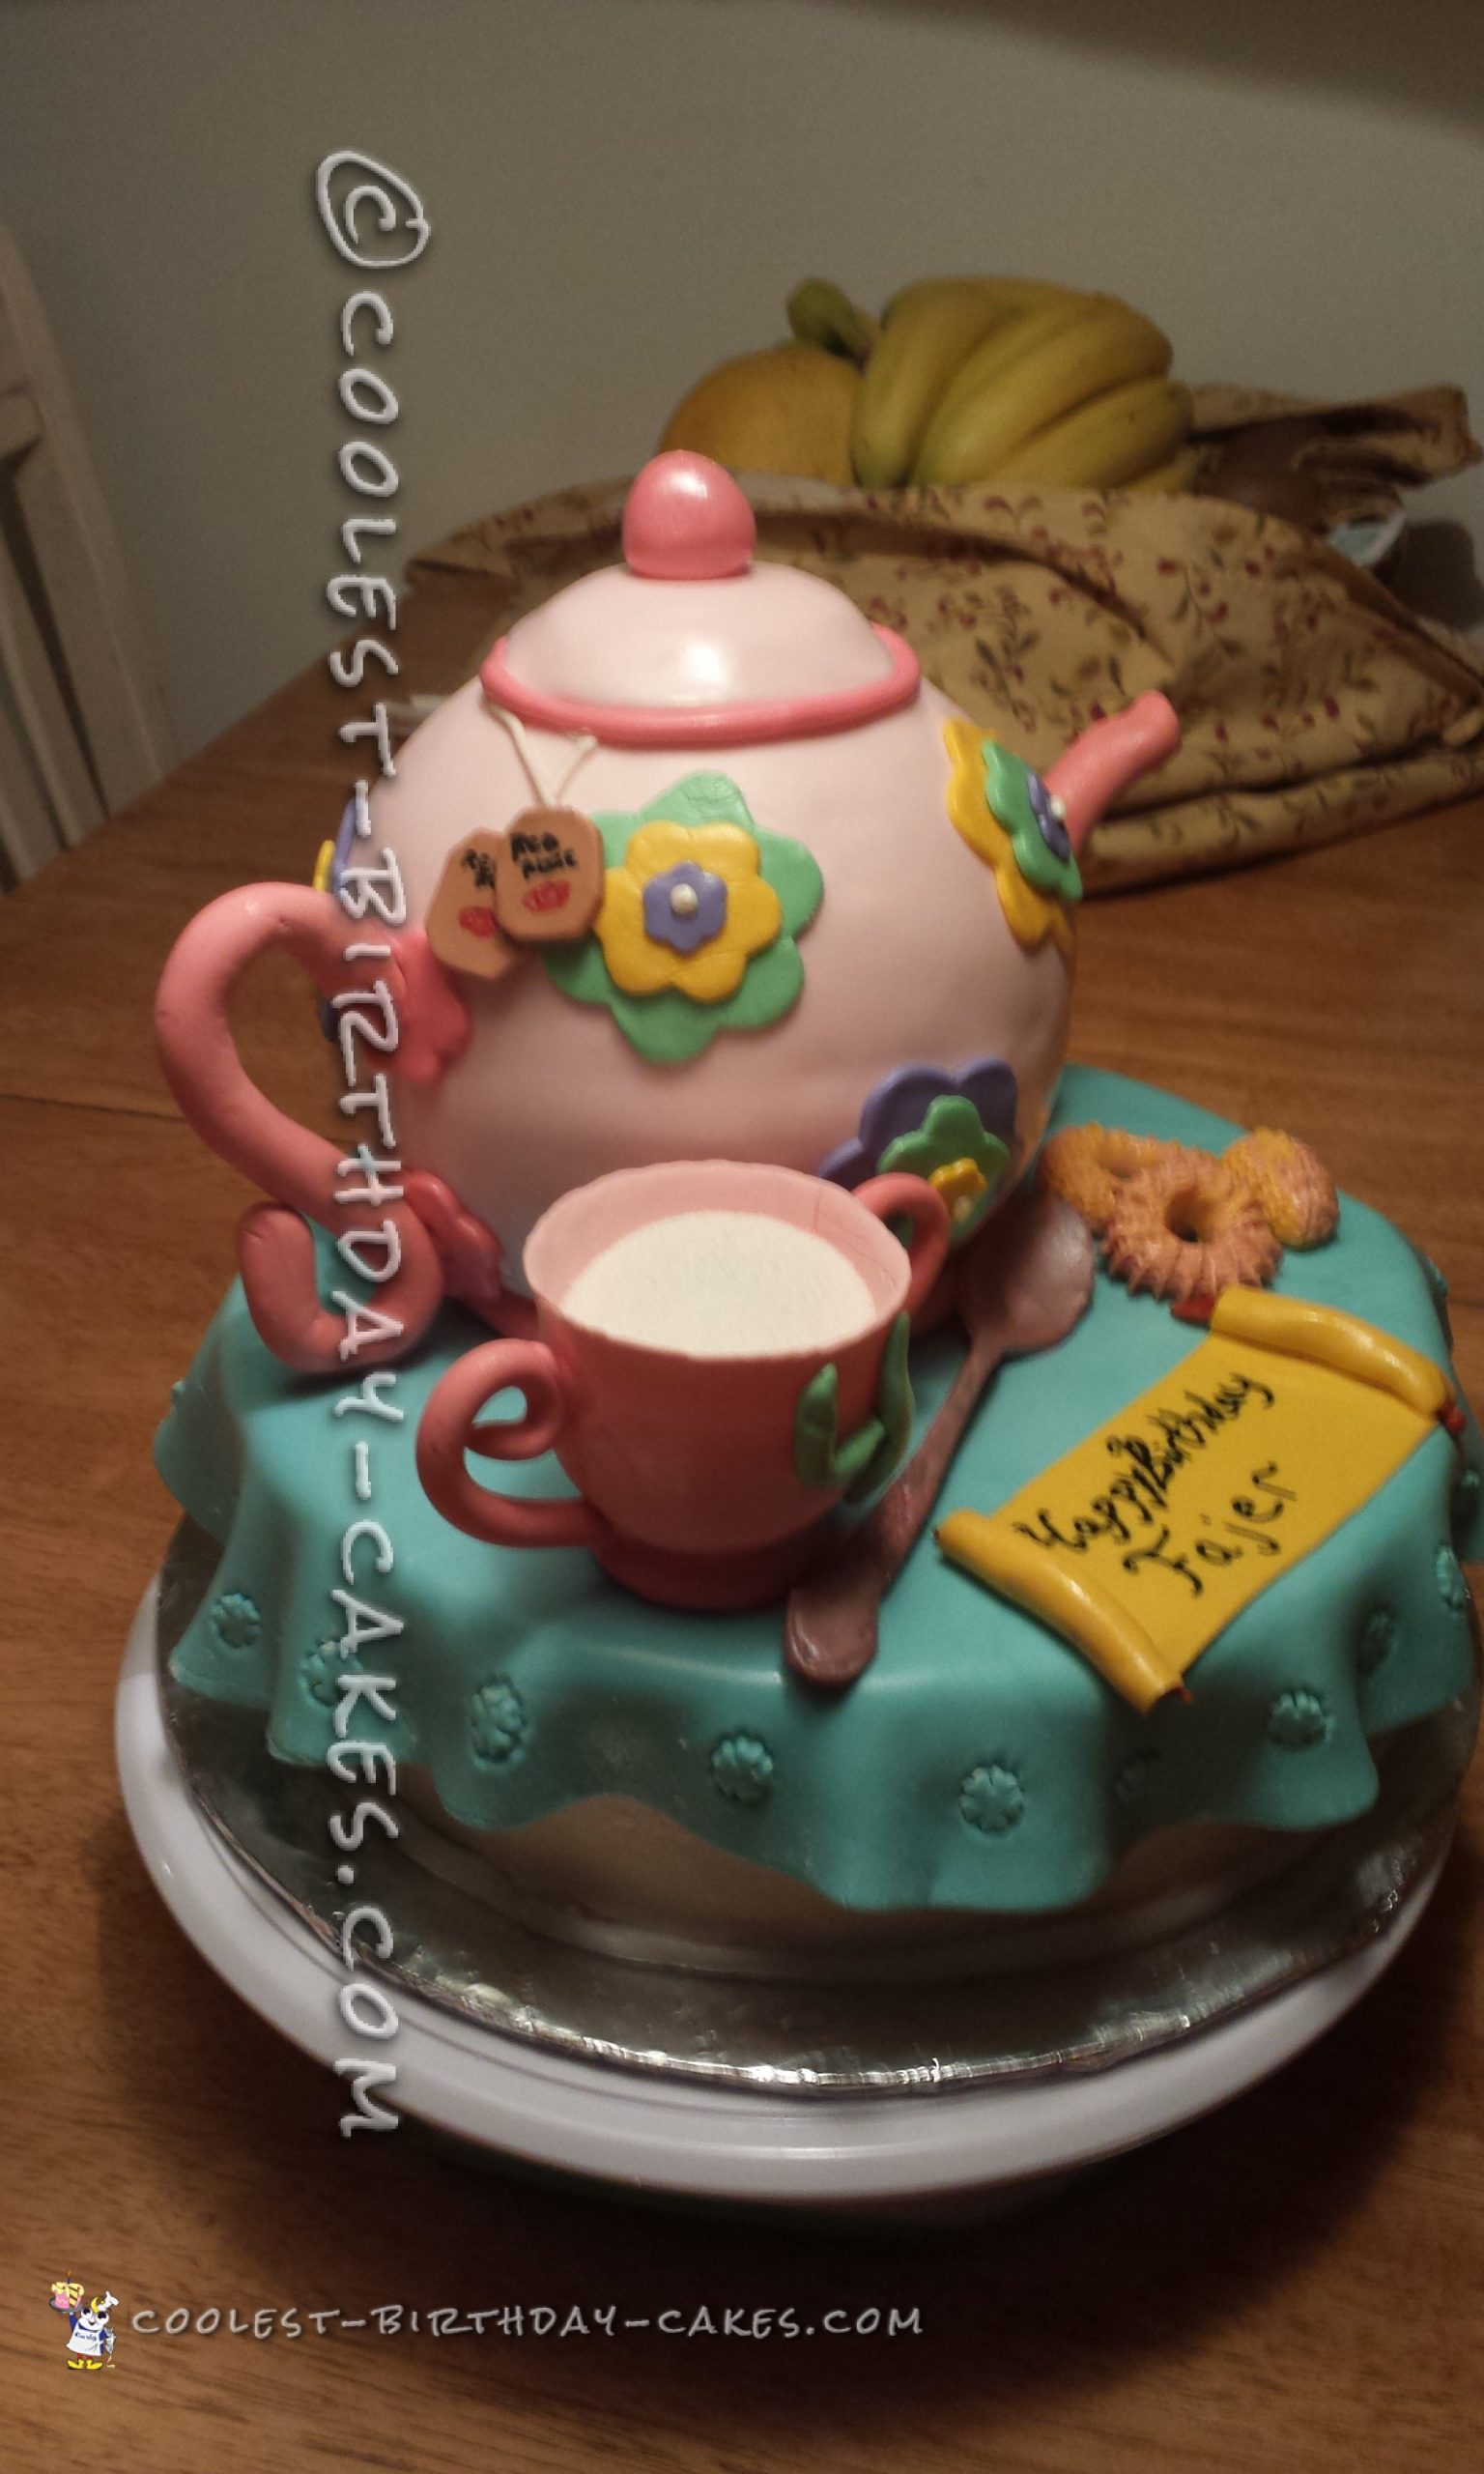 Coolest Tea Party Cake